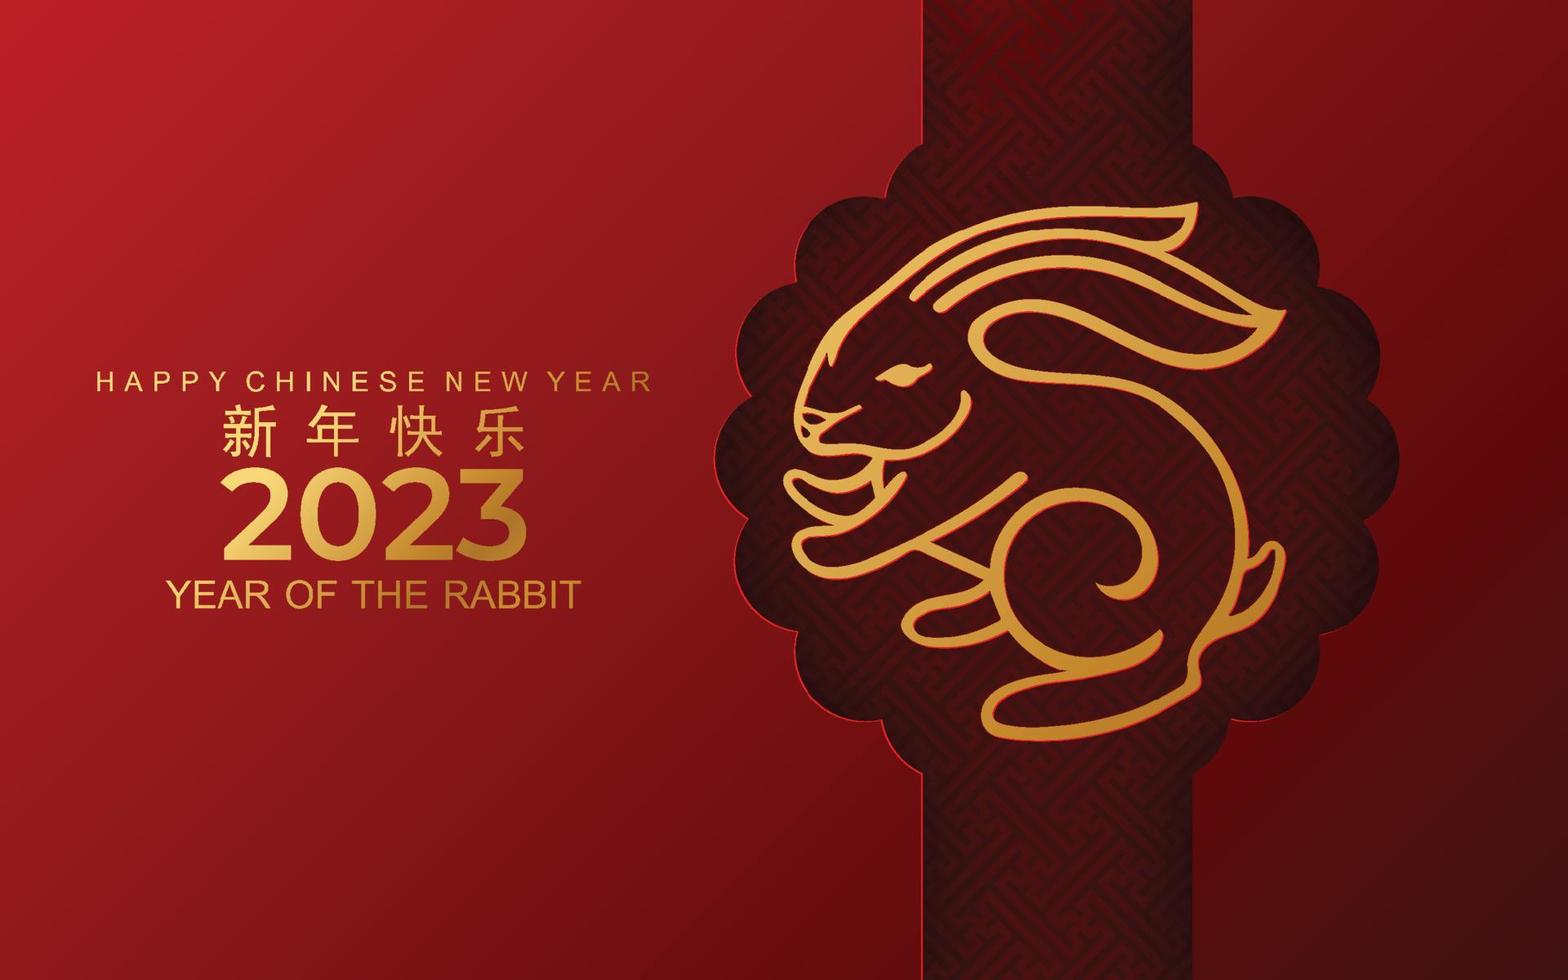 feliz ano novo chinês 2023 gong xi fa cai ano do coelho, lebres, signo do zodíaco coelho com flor, lanterna, elementos asiáticos estilo de corte de papel dourado na cor de fundo. vetor